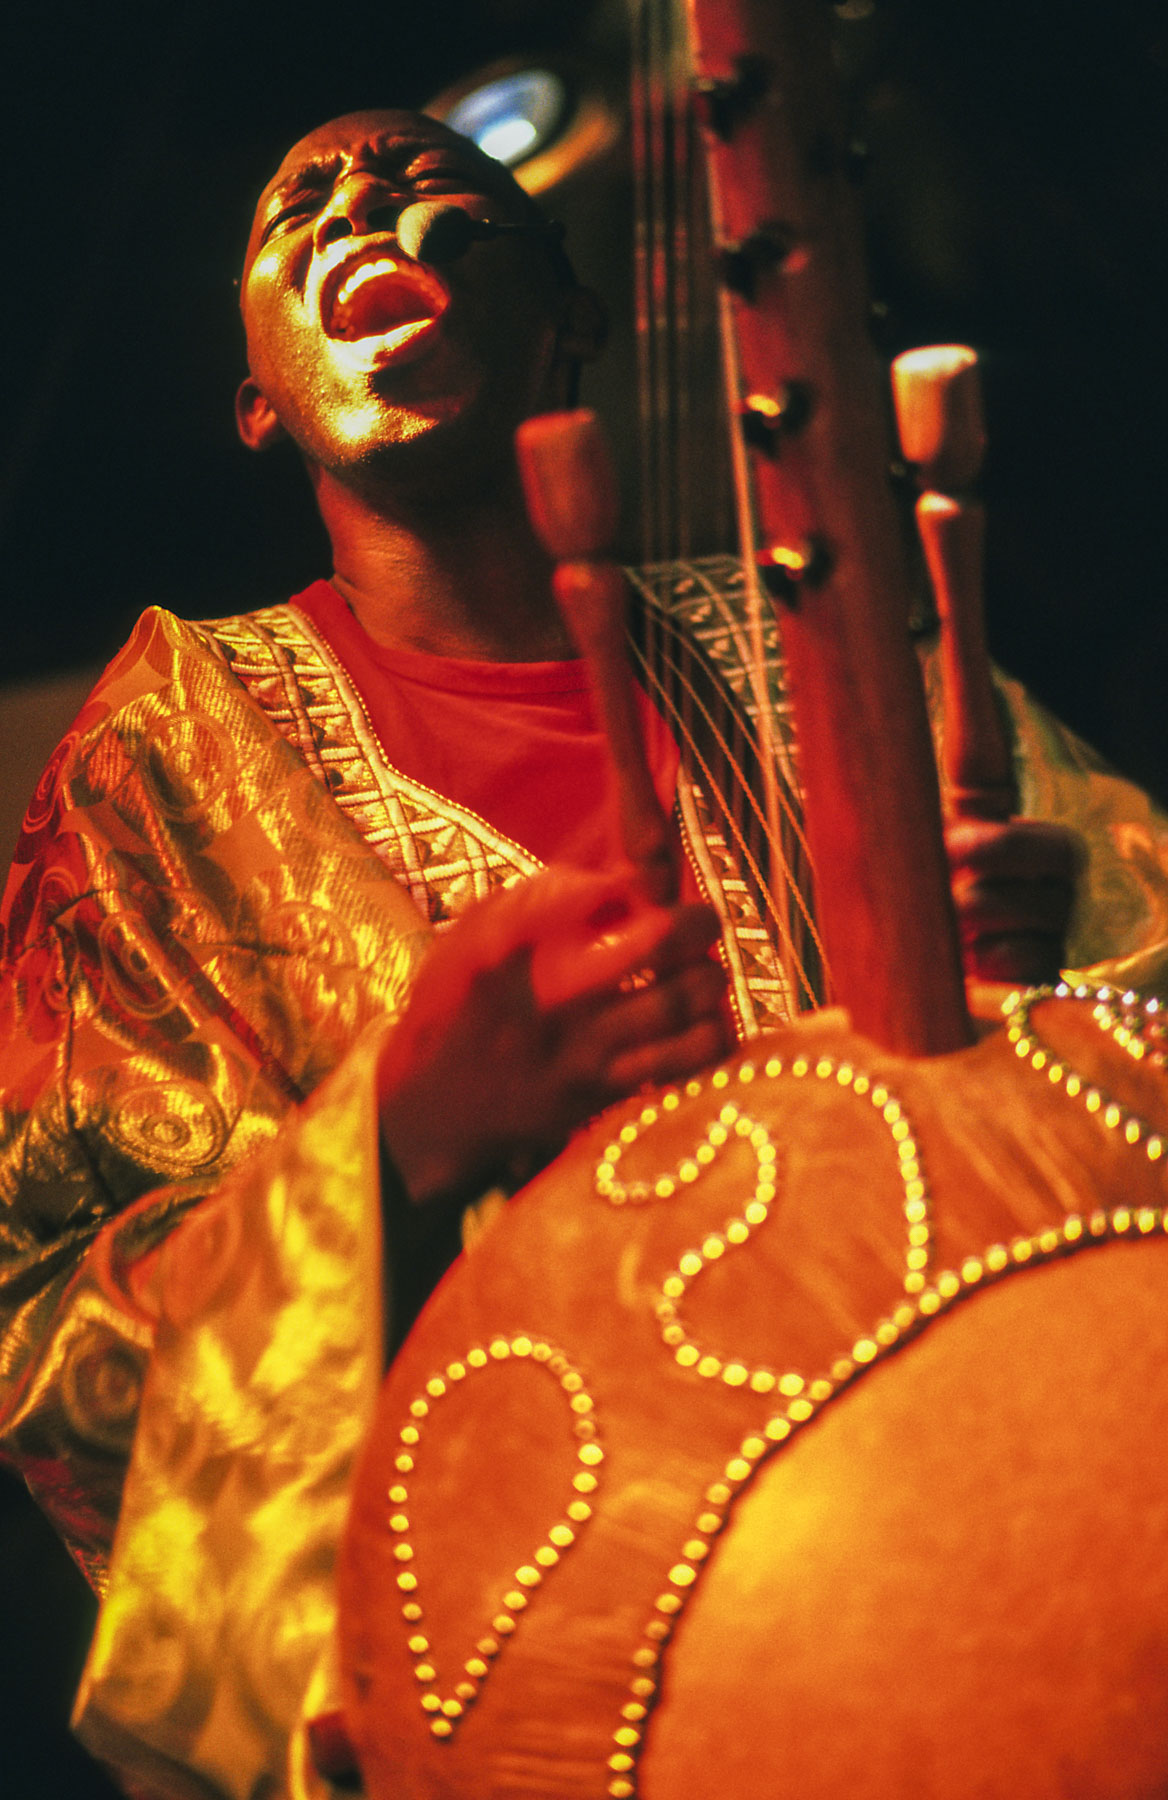 Un chanteur africain en habit traditionnel joue d’un gros instrument à cordes durant un spectacle de nuit.